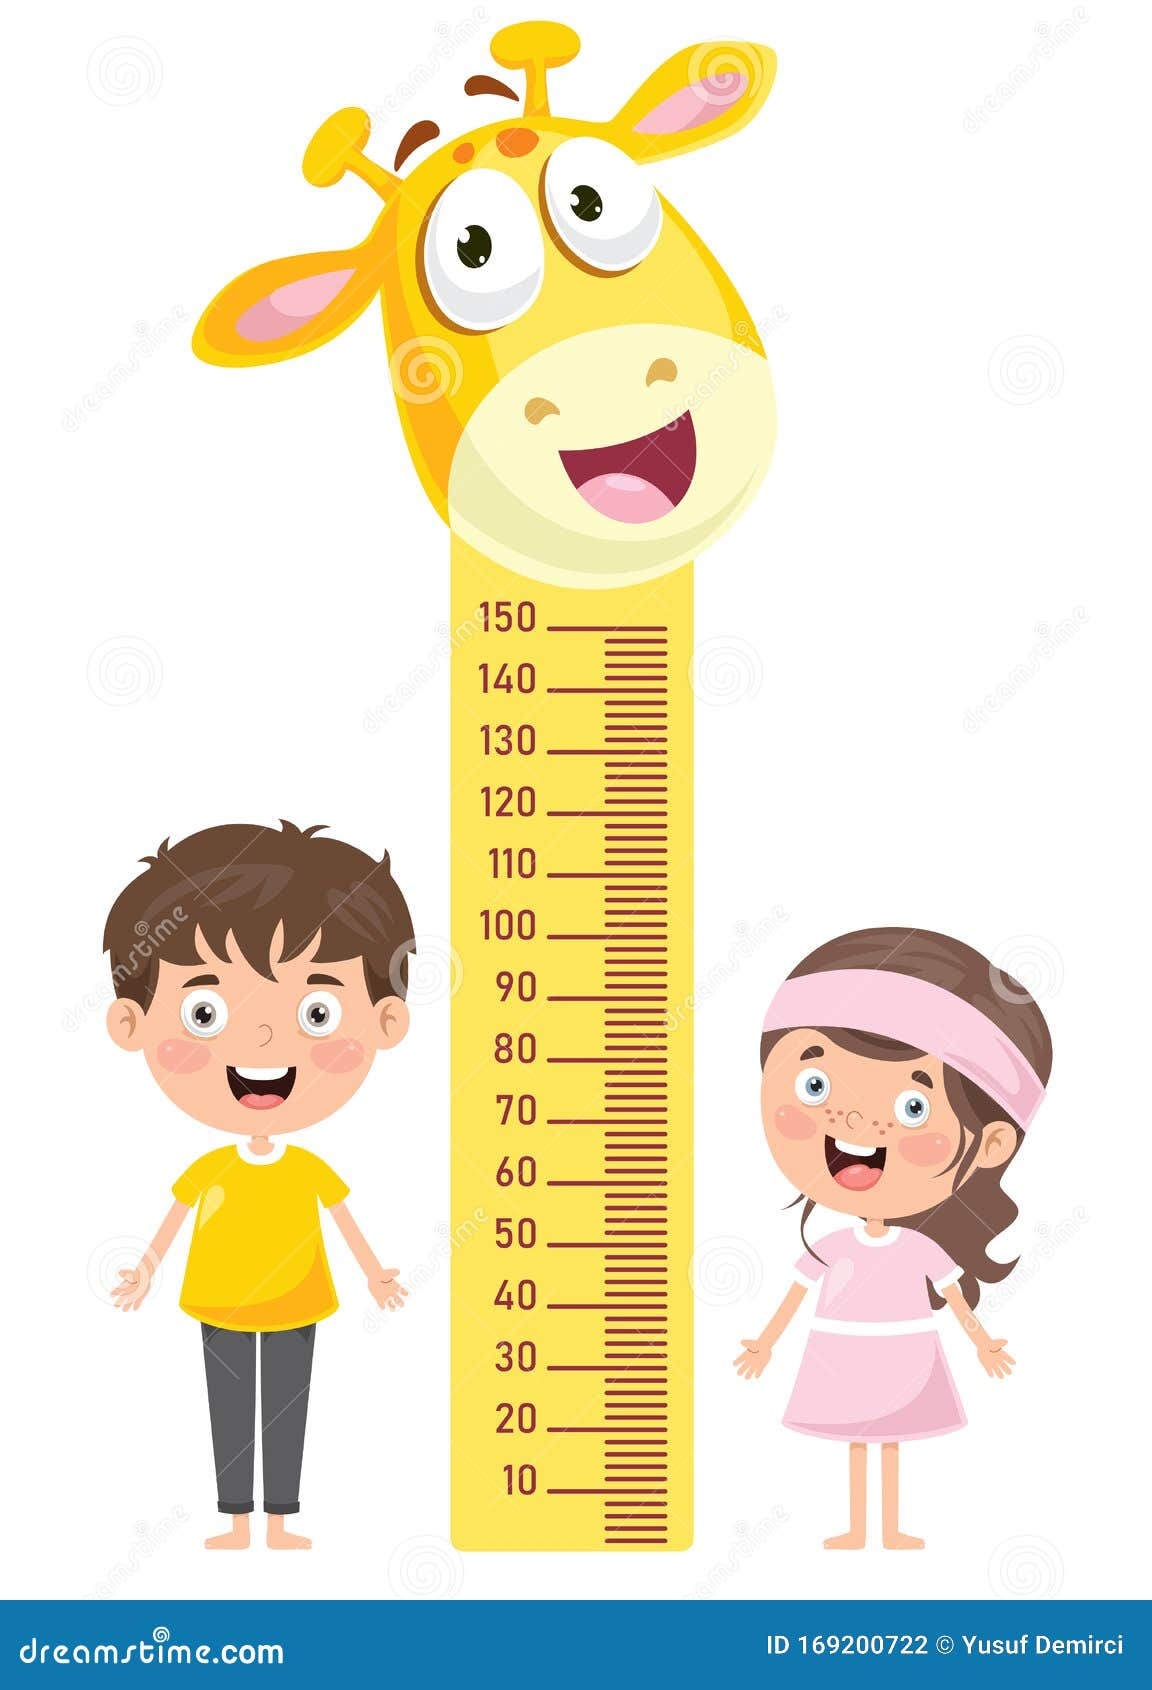 height measure for little children